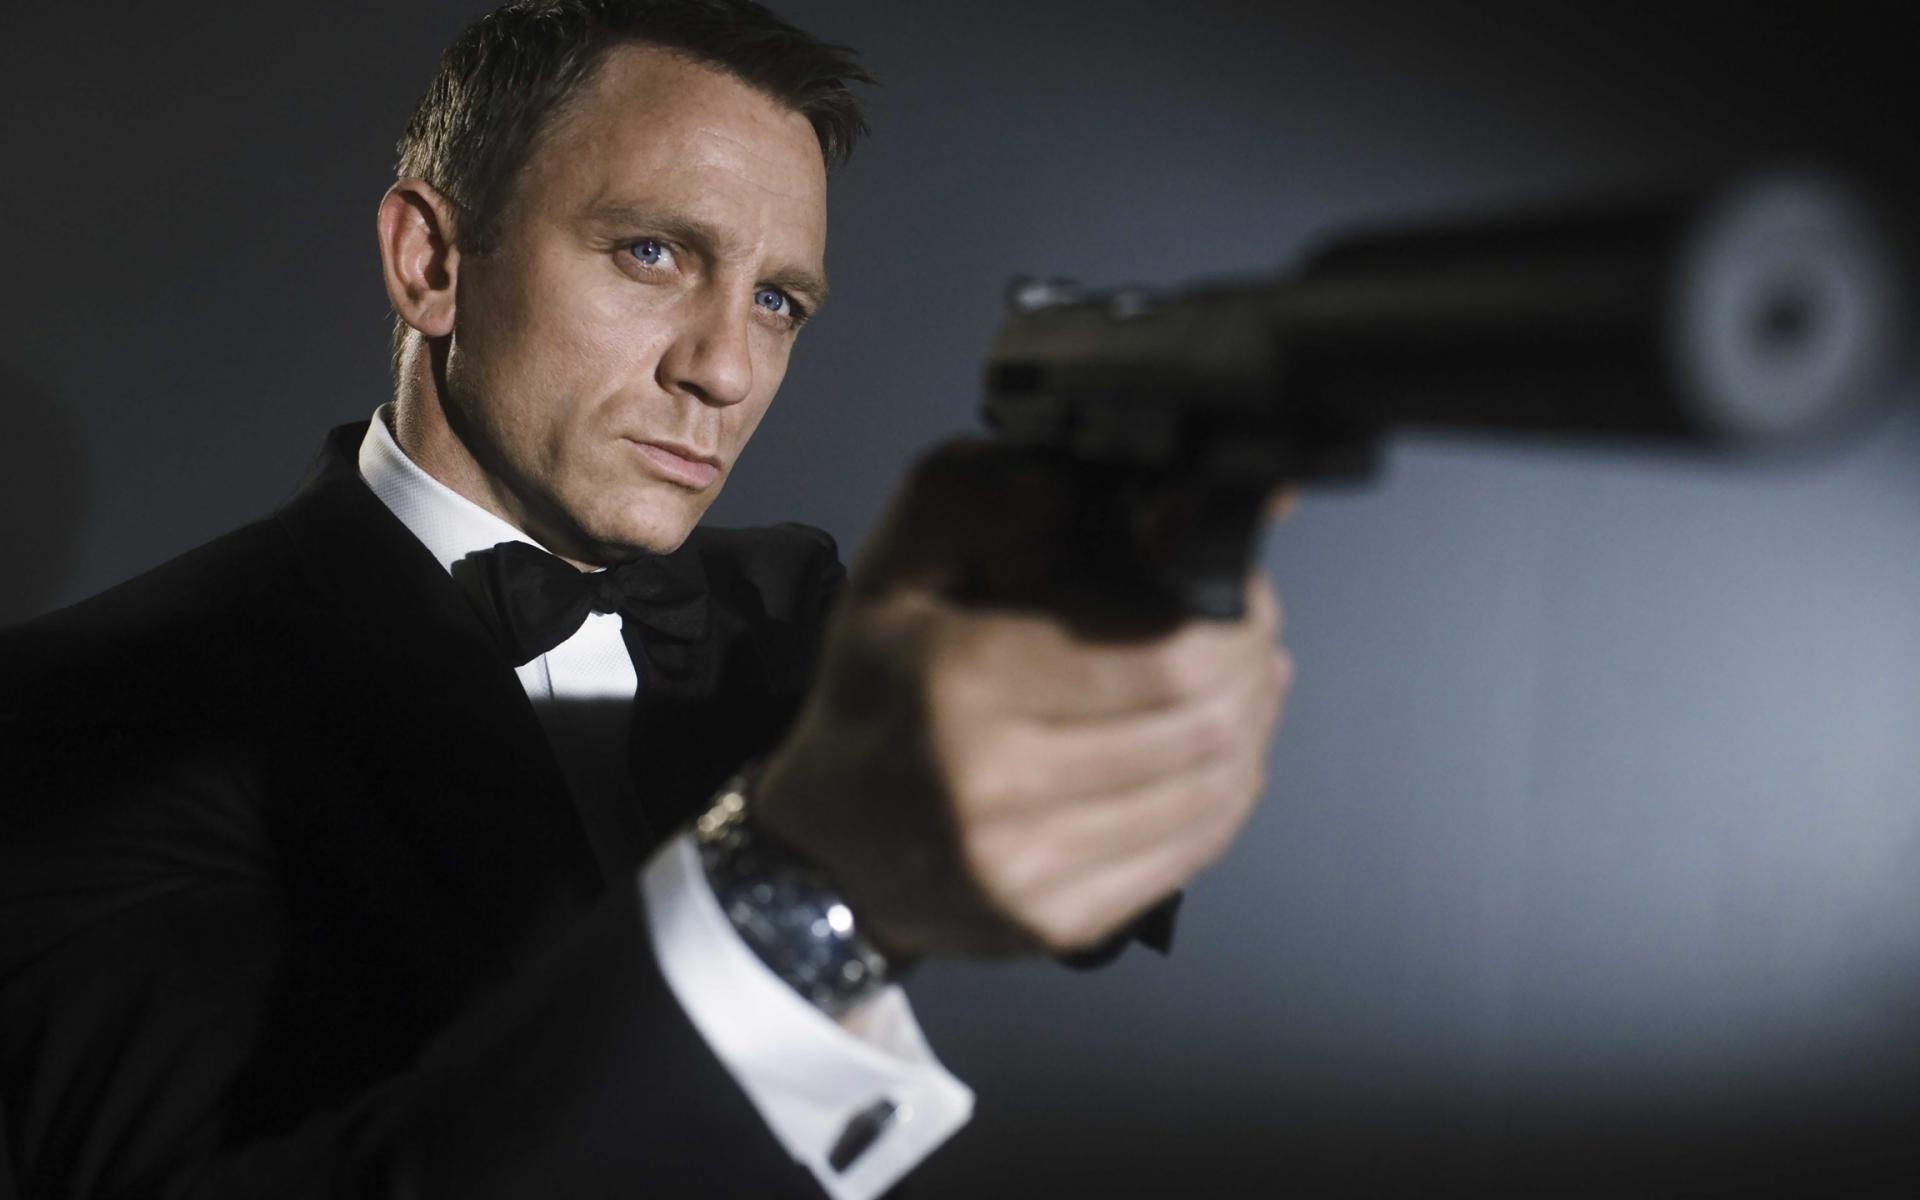 Even before he was Bond, women found him irresistible. Happy birthday, Daniel Craig!  